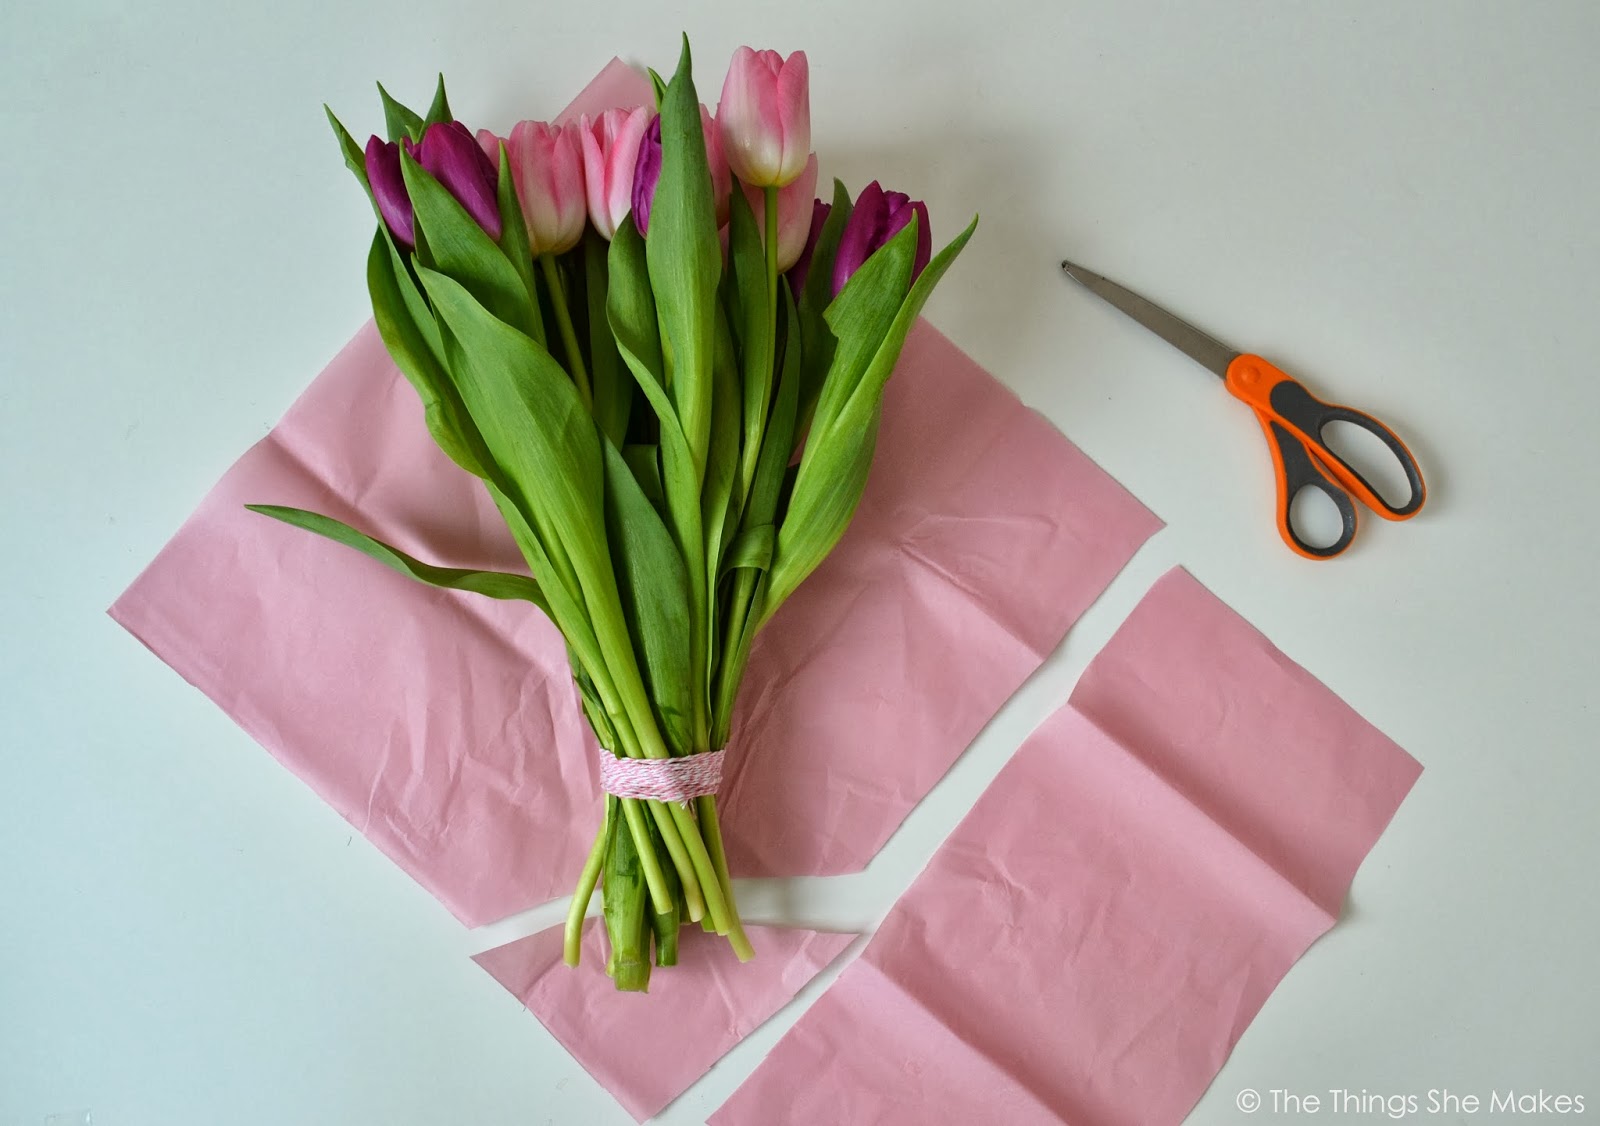 Как красиво оформить букет тюльпанов. Упаковка тюльпанов. Упаковка тюльпанов в бумагу. Упаковка цветов в бумагу. Тюльпаны в красивой упаковке.